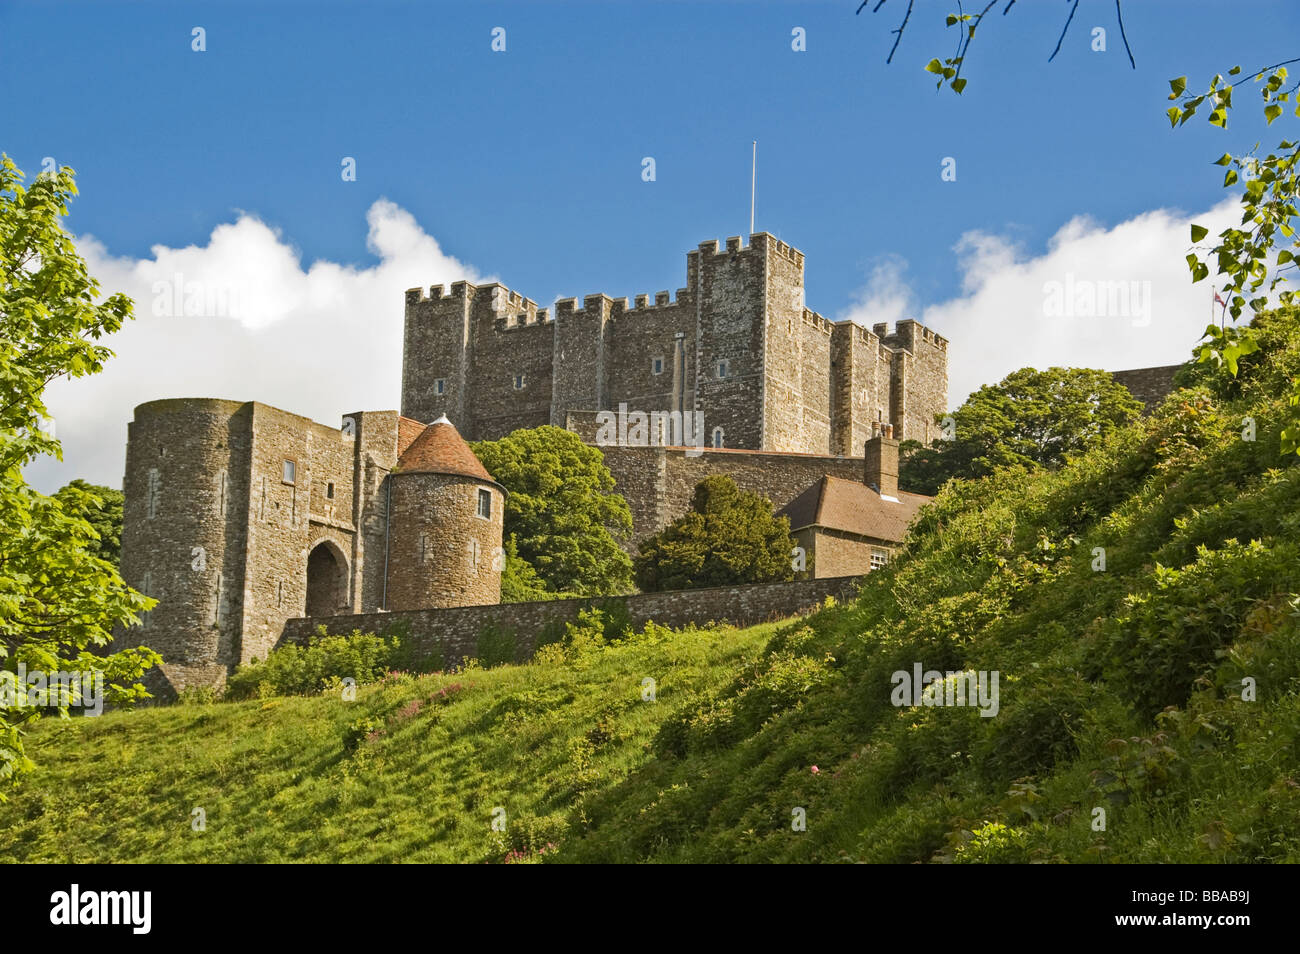 Le château de Douvres, Dover, Kent, Angleterre du Sud, Angleterre, Grande-Bretagne Banque D'Images